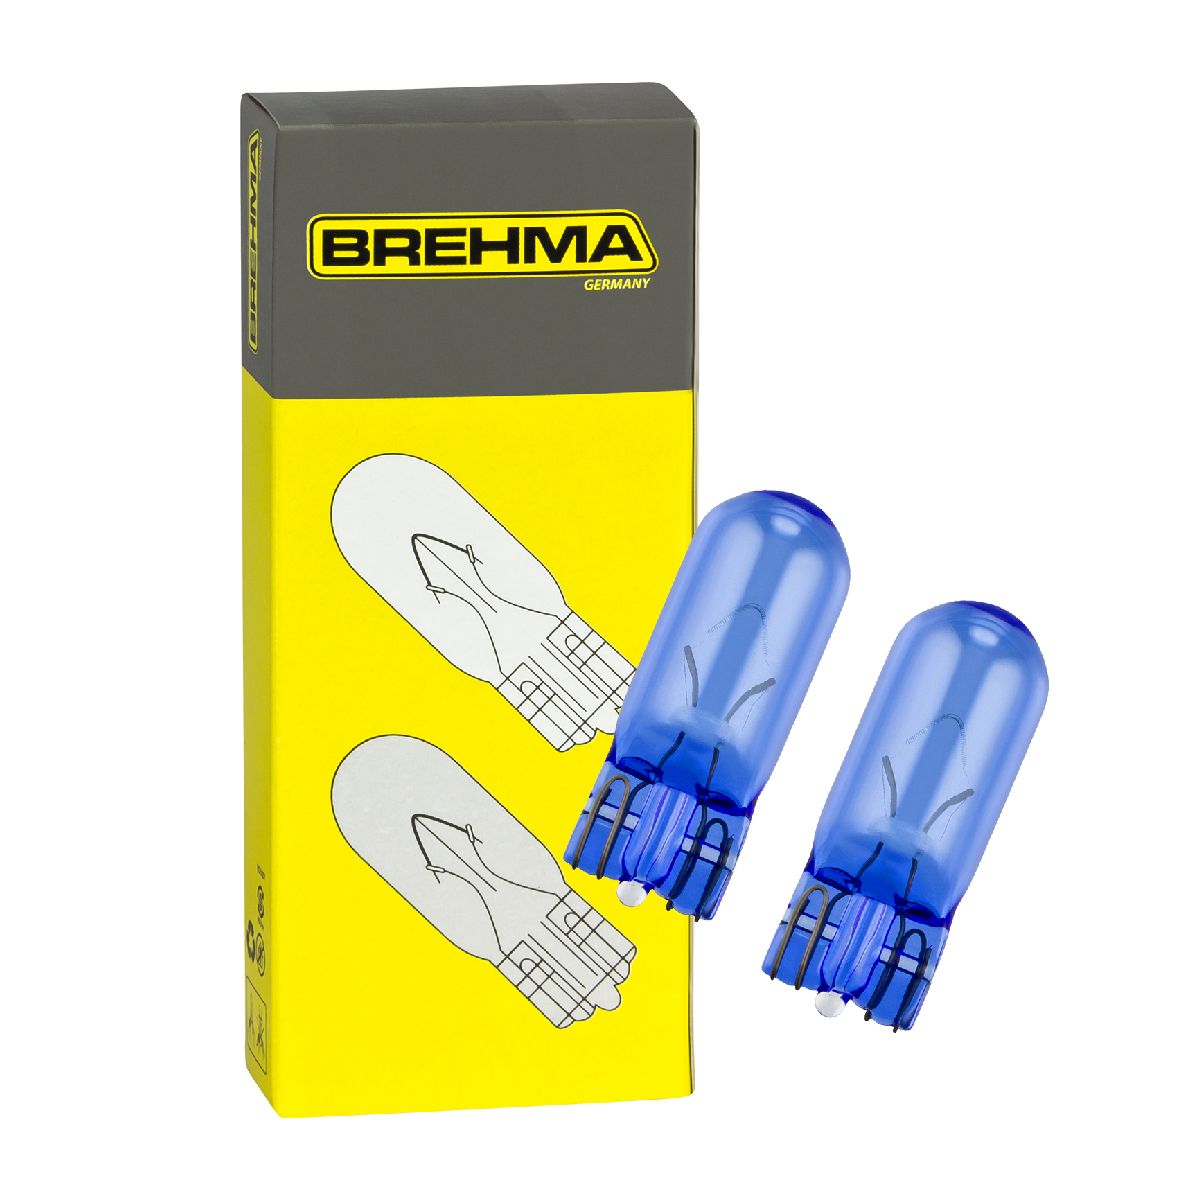 Auto-Lampen-Discount - H7 Lampen und mehr günstig kaufen - Duo Set BREHMA W5W  12V 5W Blue Standlicht Autolampen in Xenon Optik